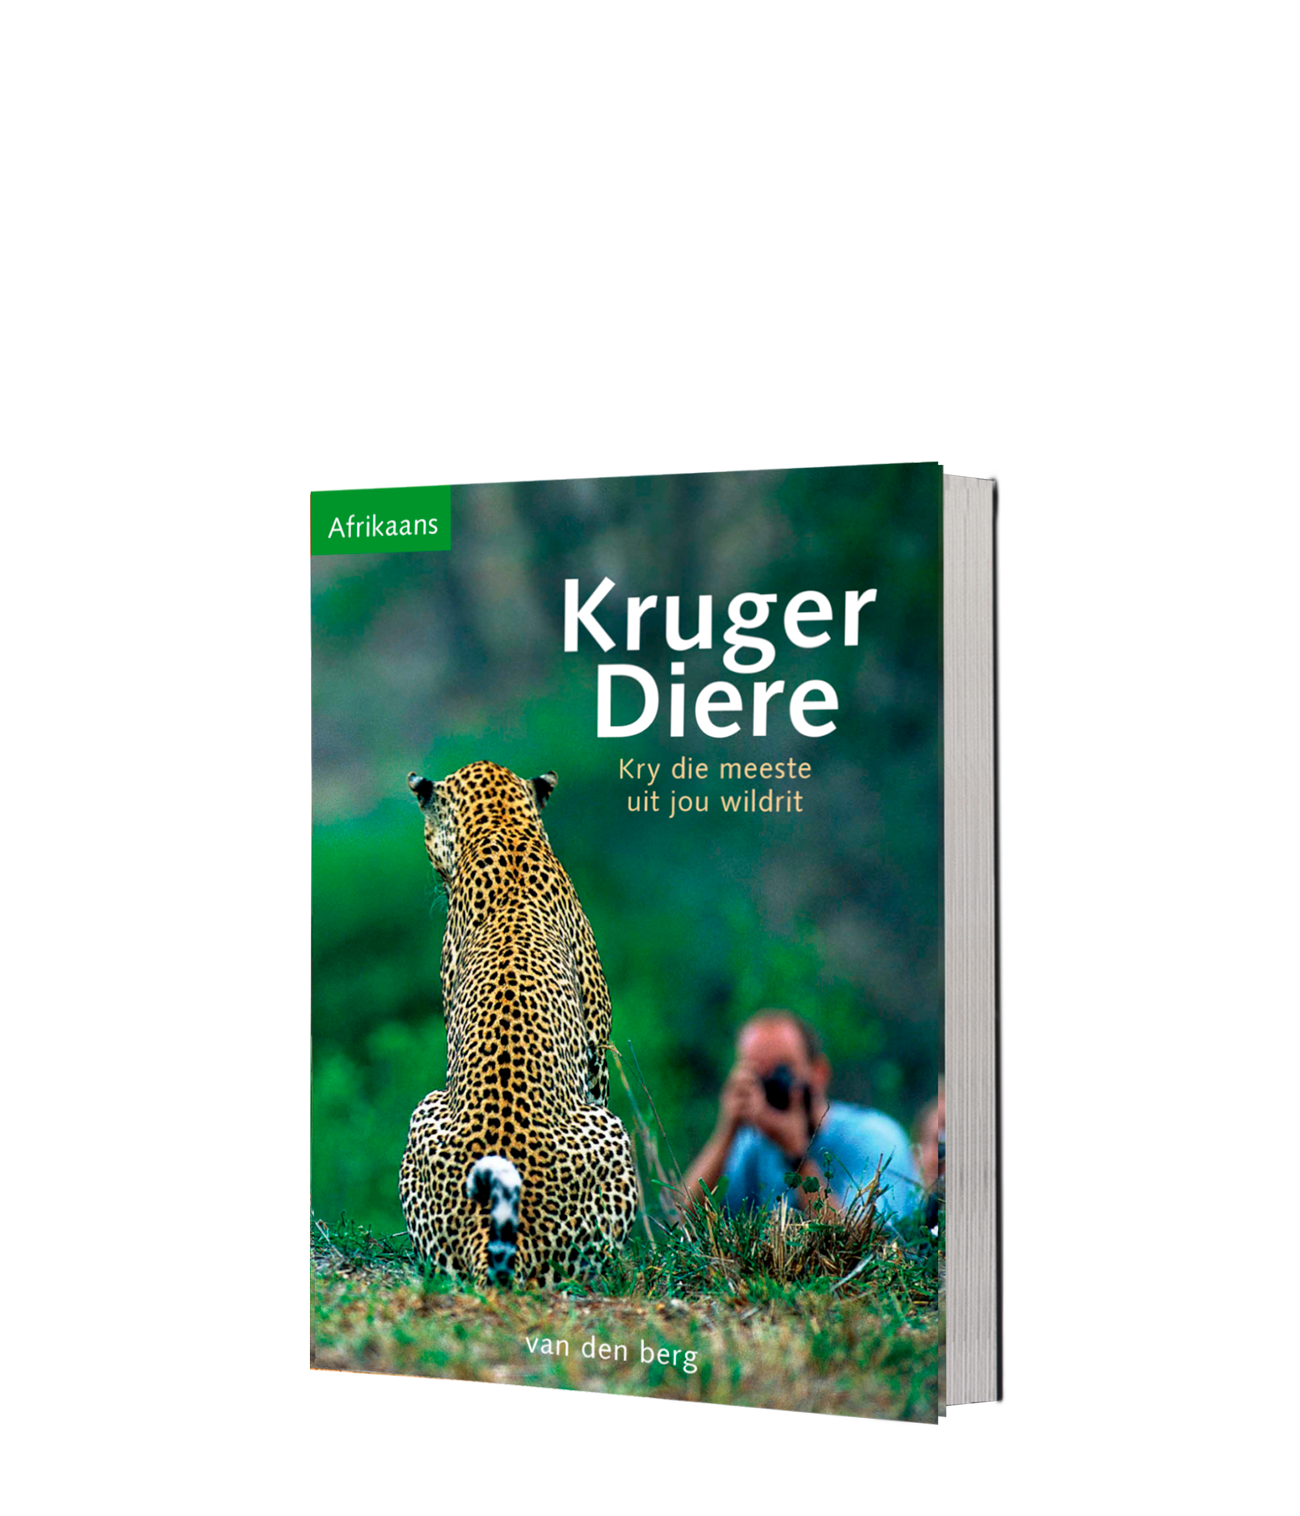 Kruger Diere